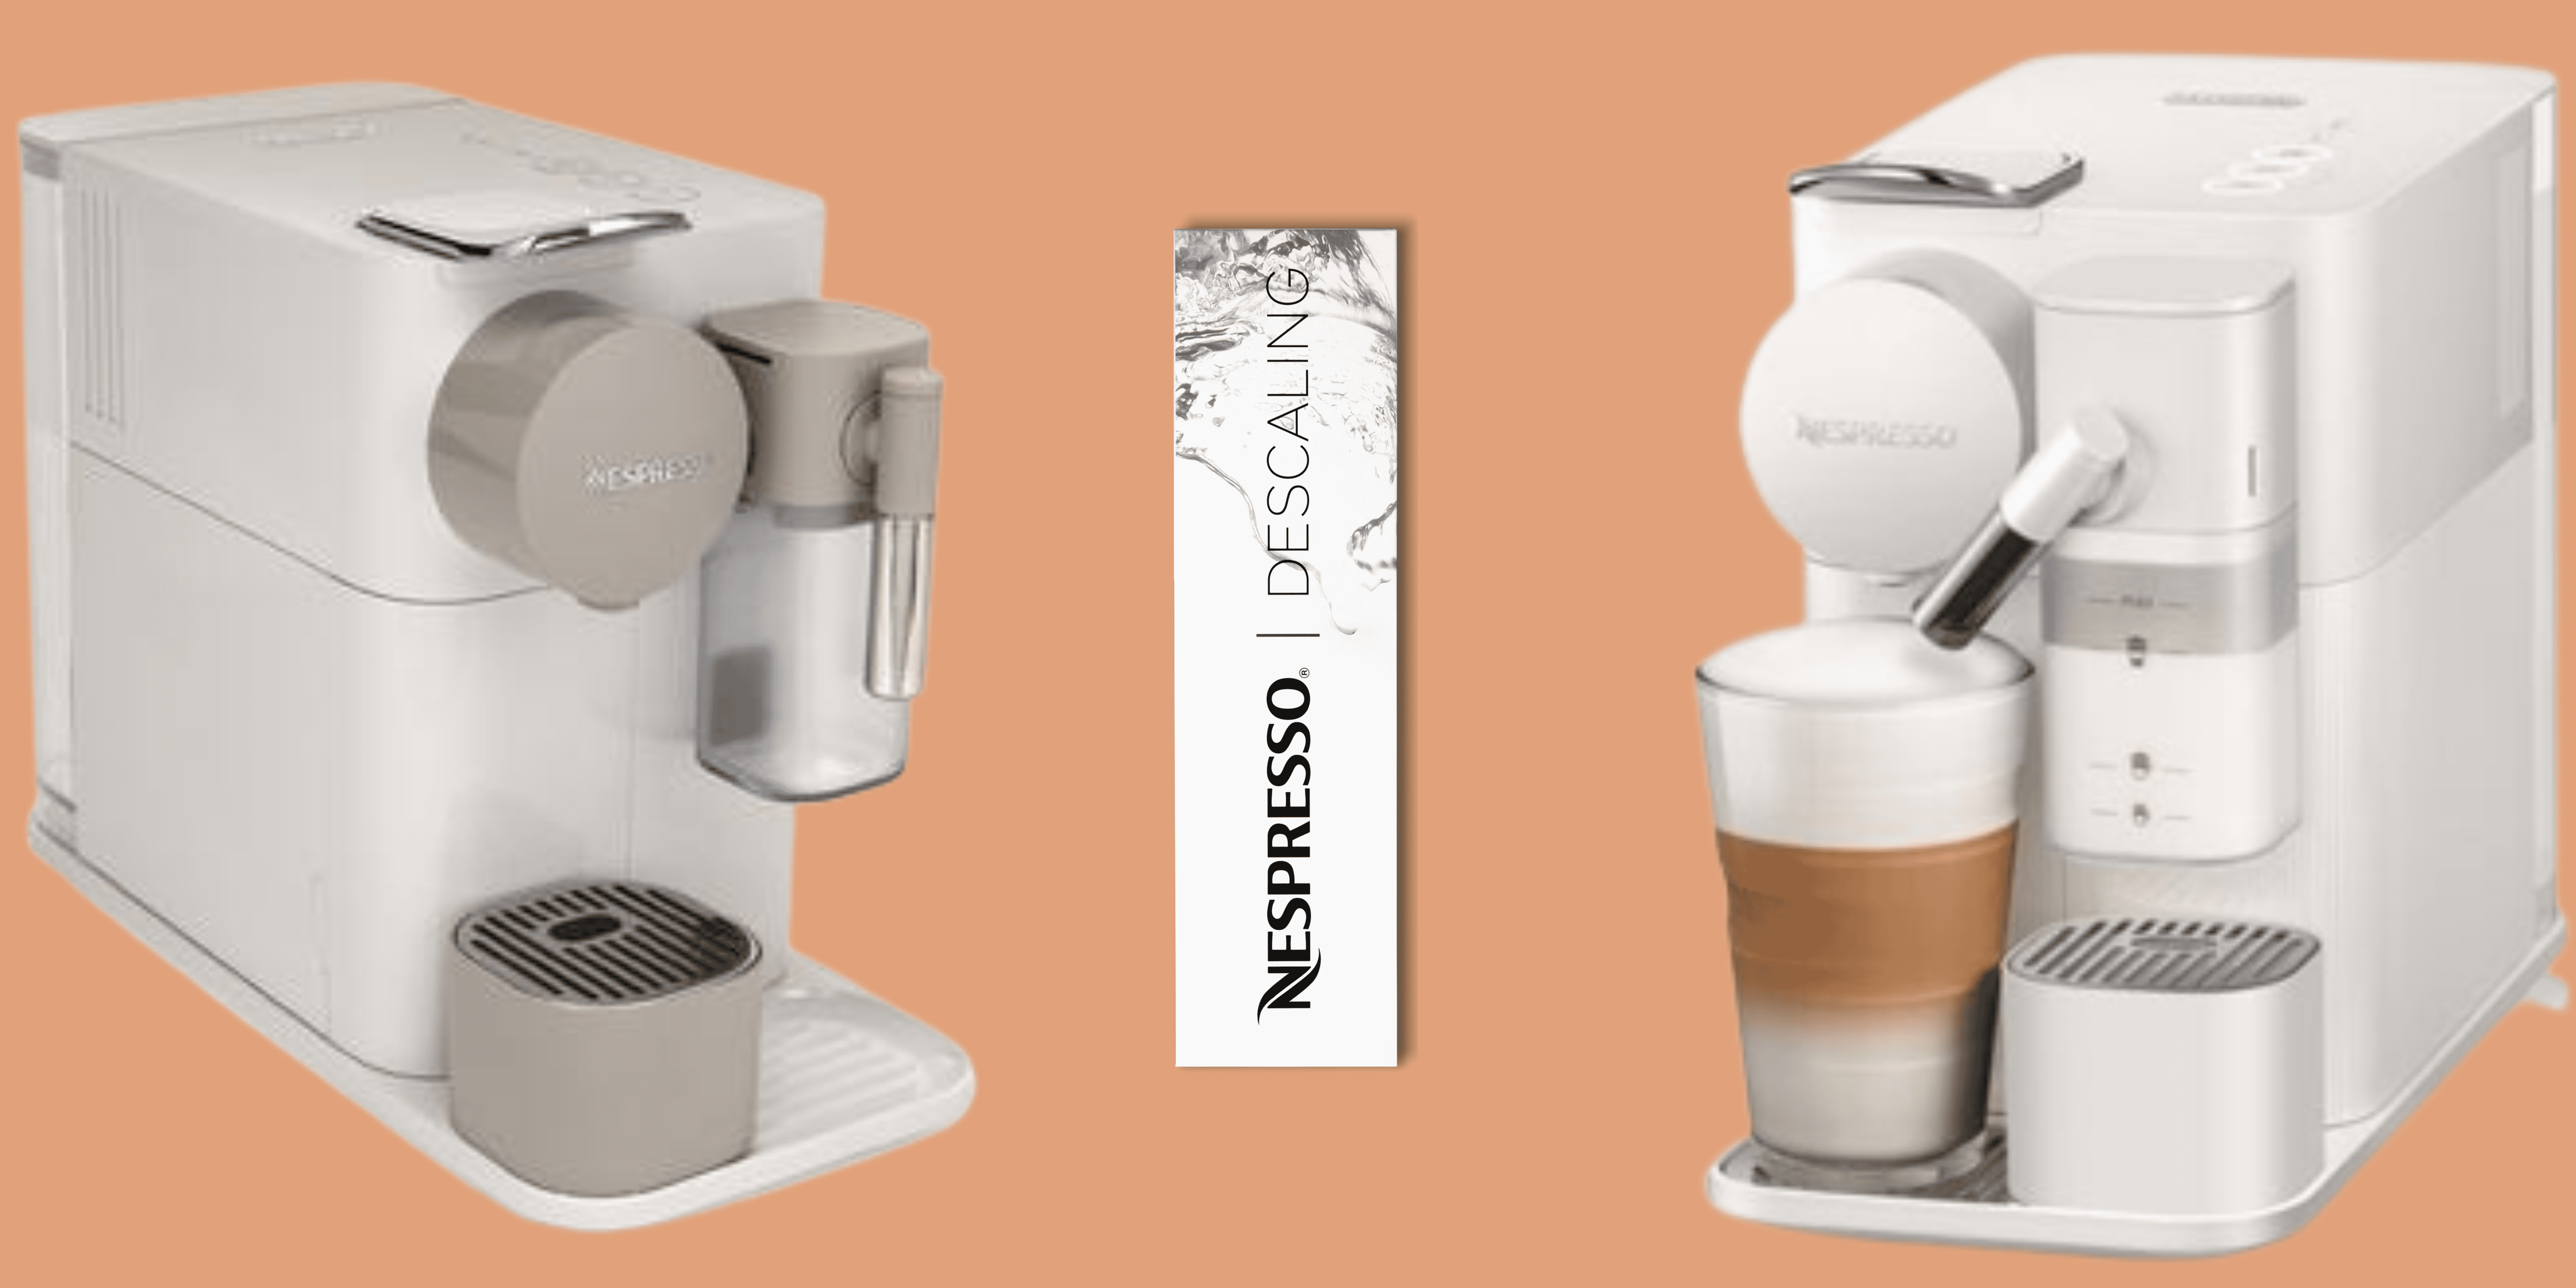 Tutoriel : Comment détartrer votre machine Nespresso ? - Blog BUT